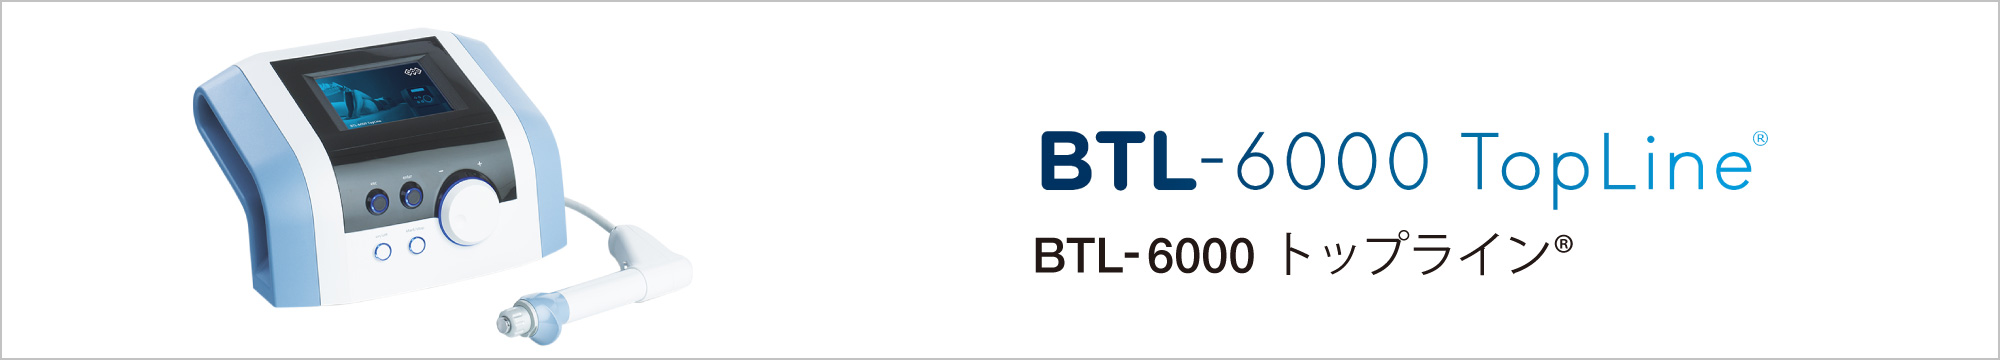 BTL-6000 トップライン